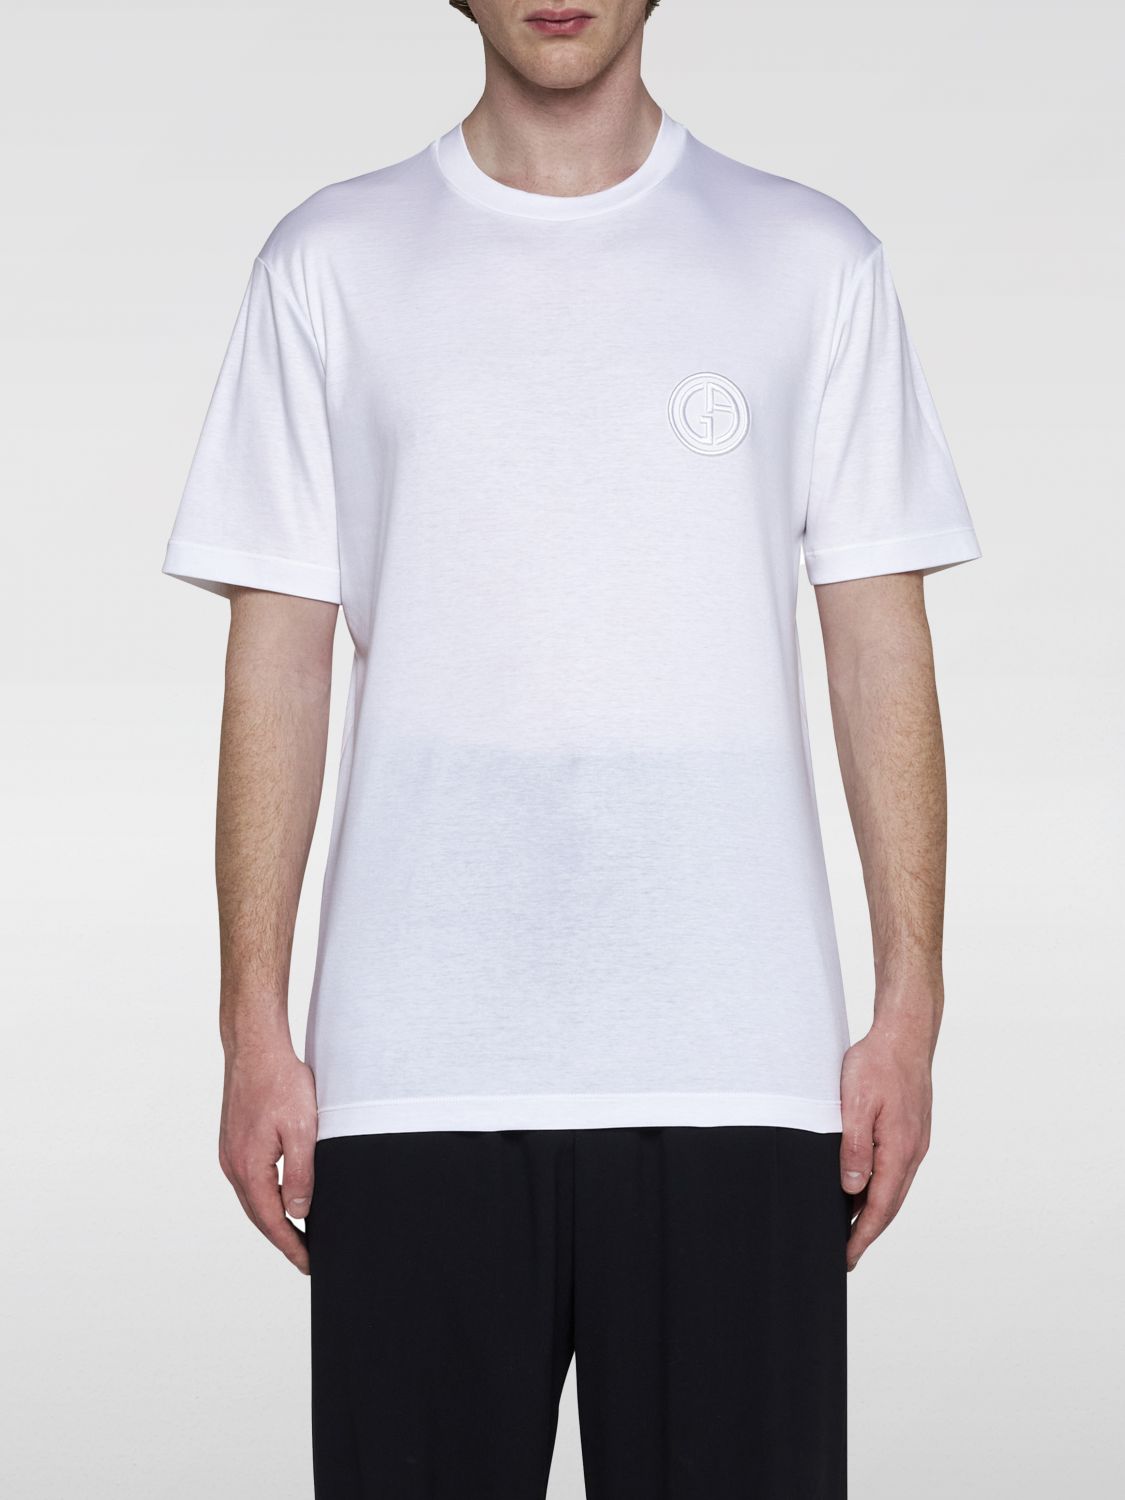 Giorgio Armani T-Shirt GIORGIO ARMANI Men color White